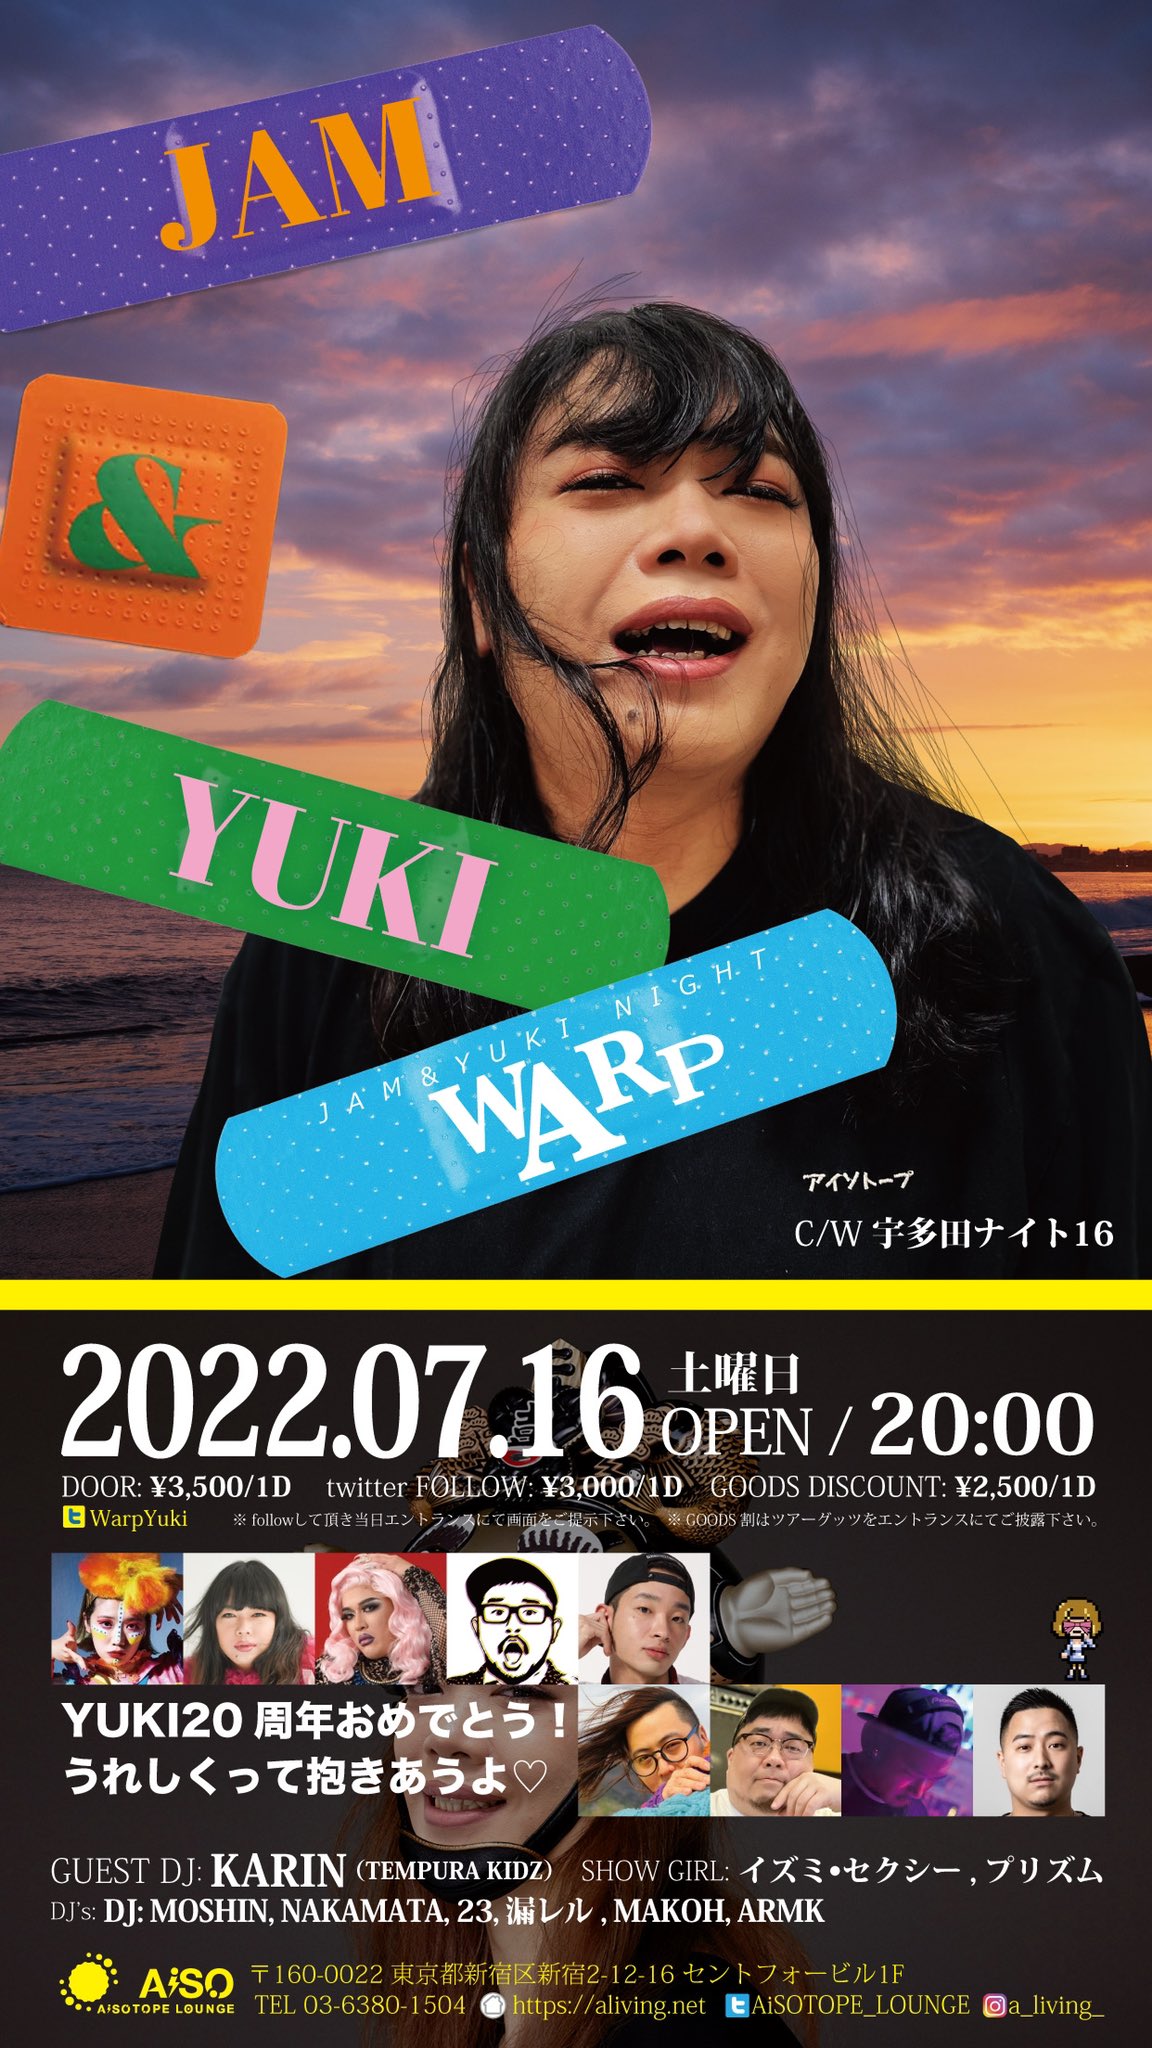 宇多田ナイト16 / JAM&YUKI NIGHT “WARP”